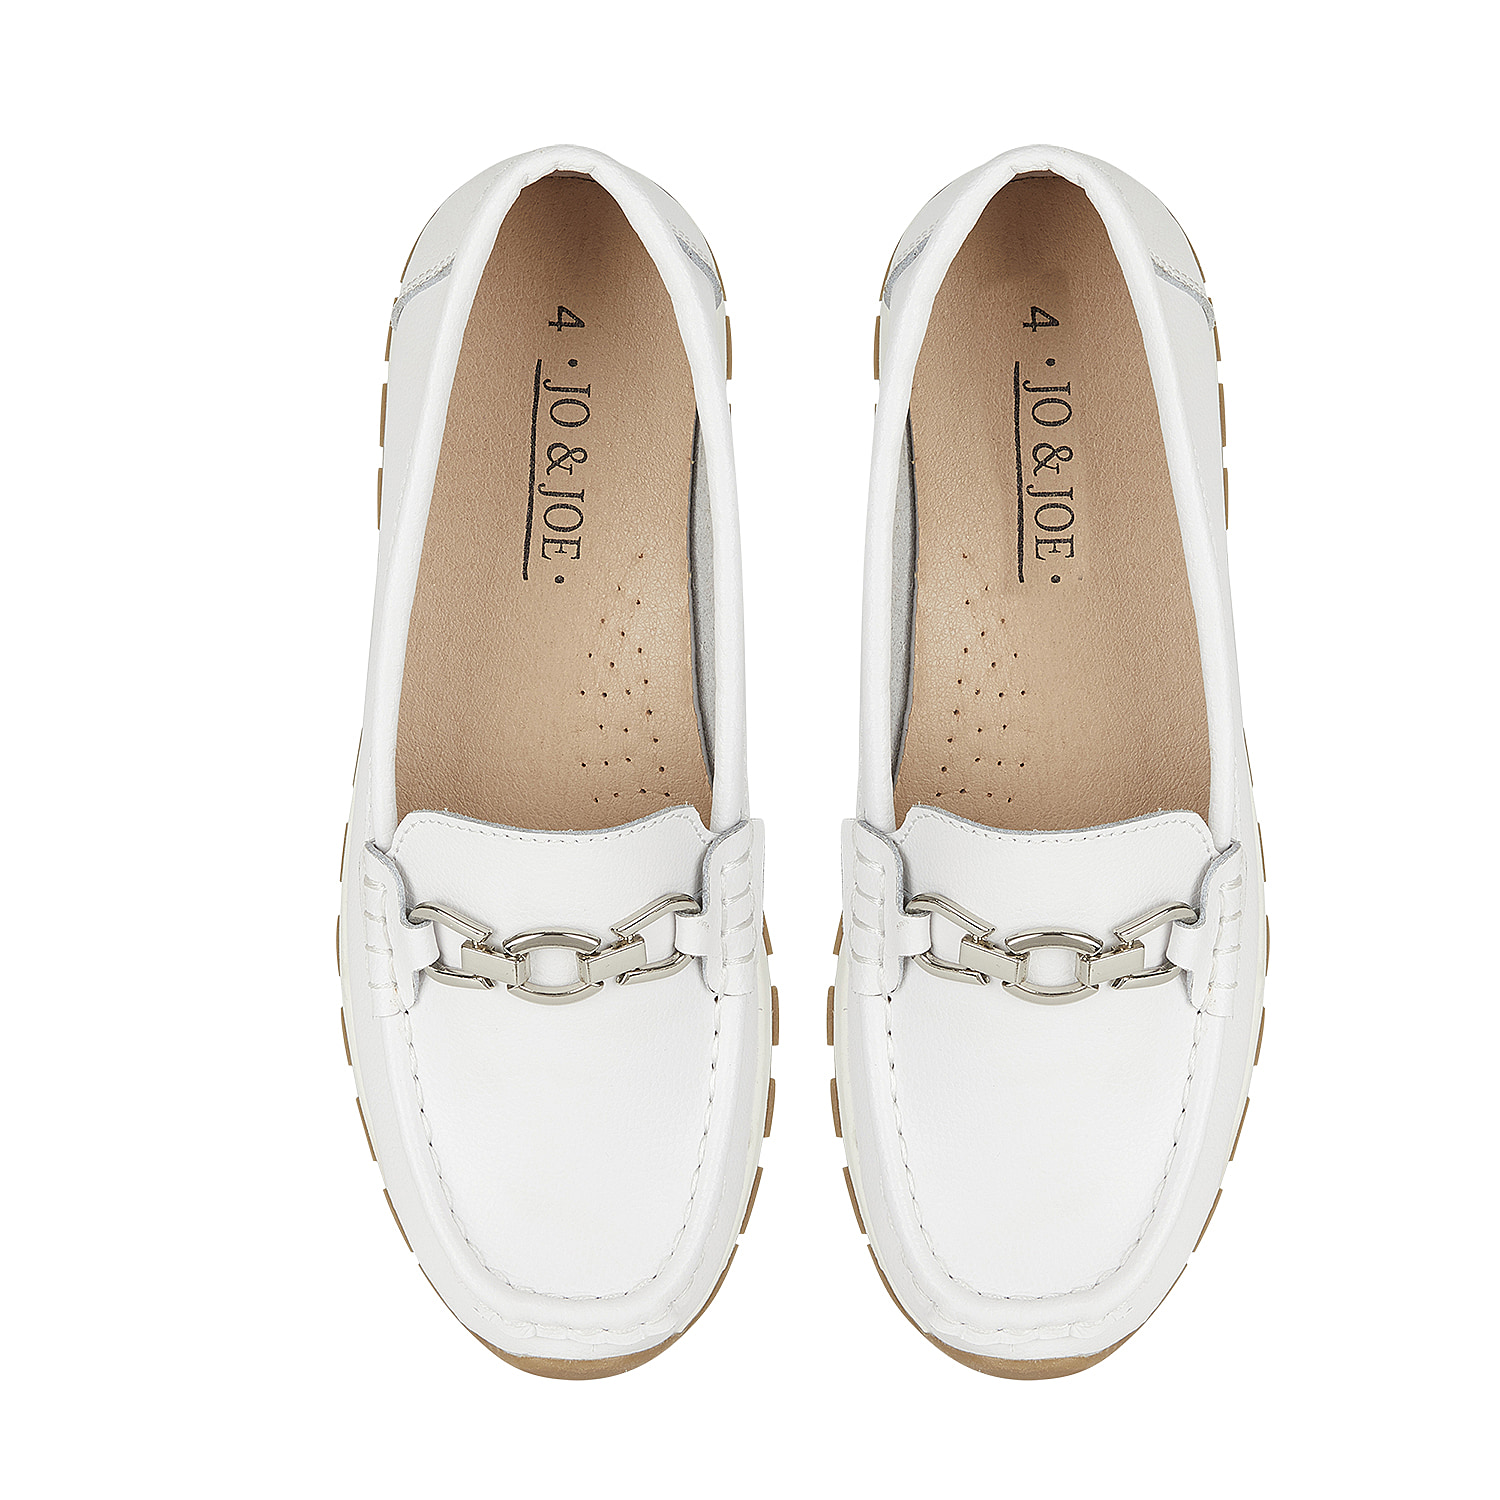 Jo-Joe-Ladies-Shoe-Size-4-White